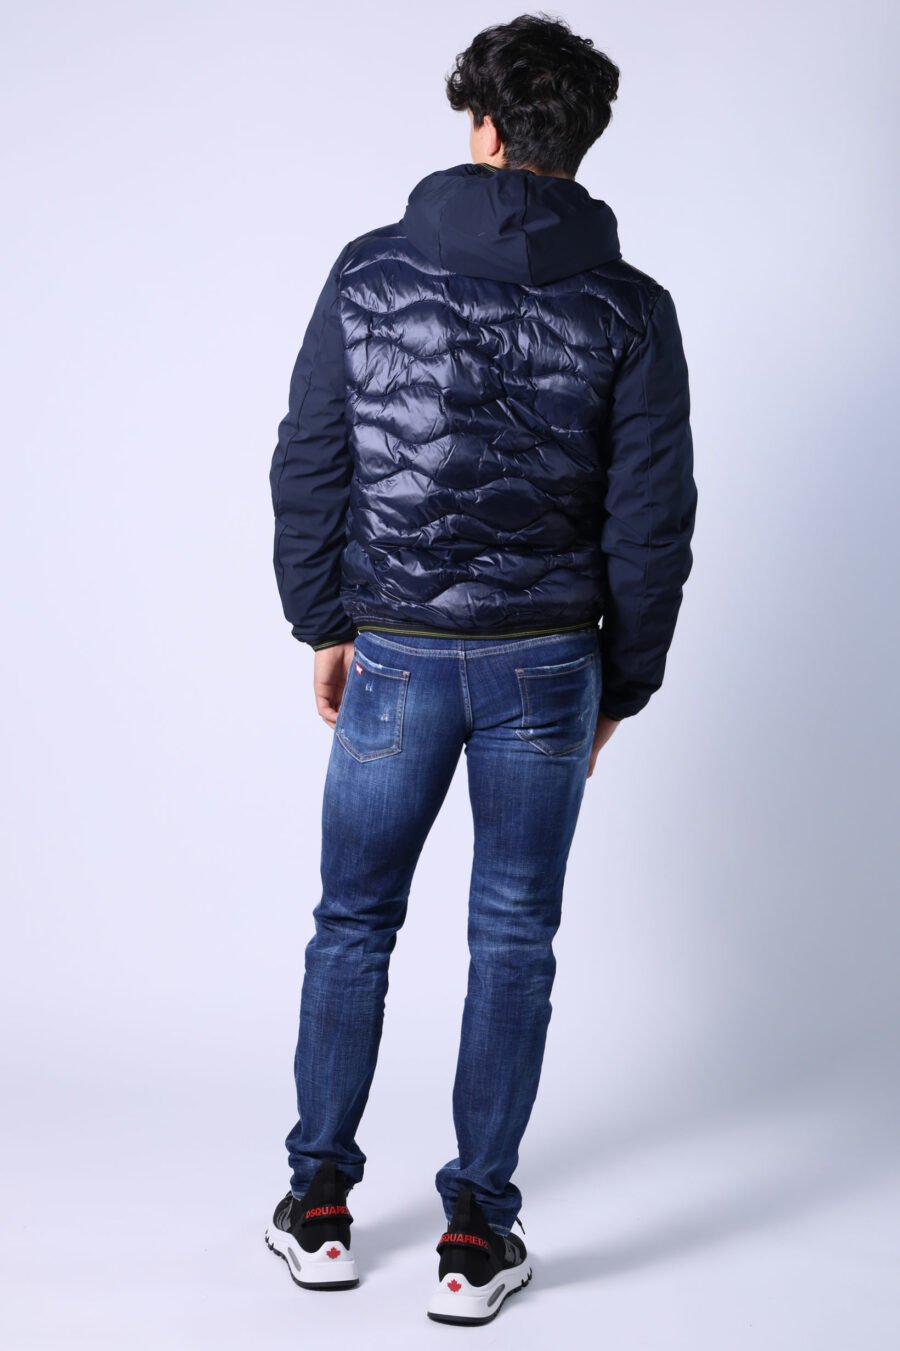 Slim jeans "Slim jean" blau semi-getragen mit Rissen - Untitled Catalog 05532